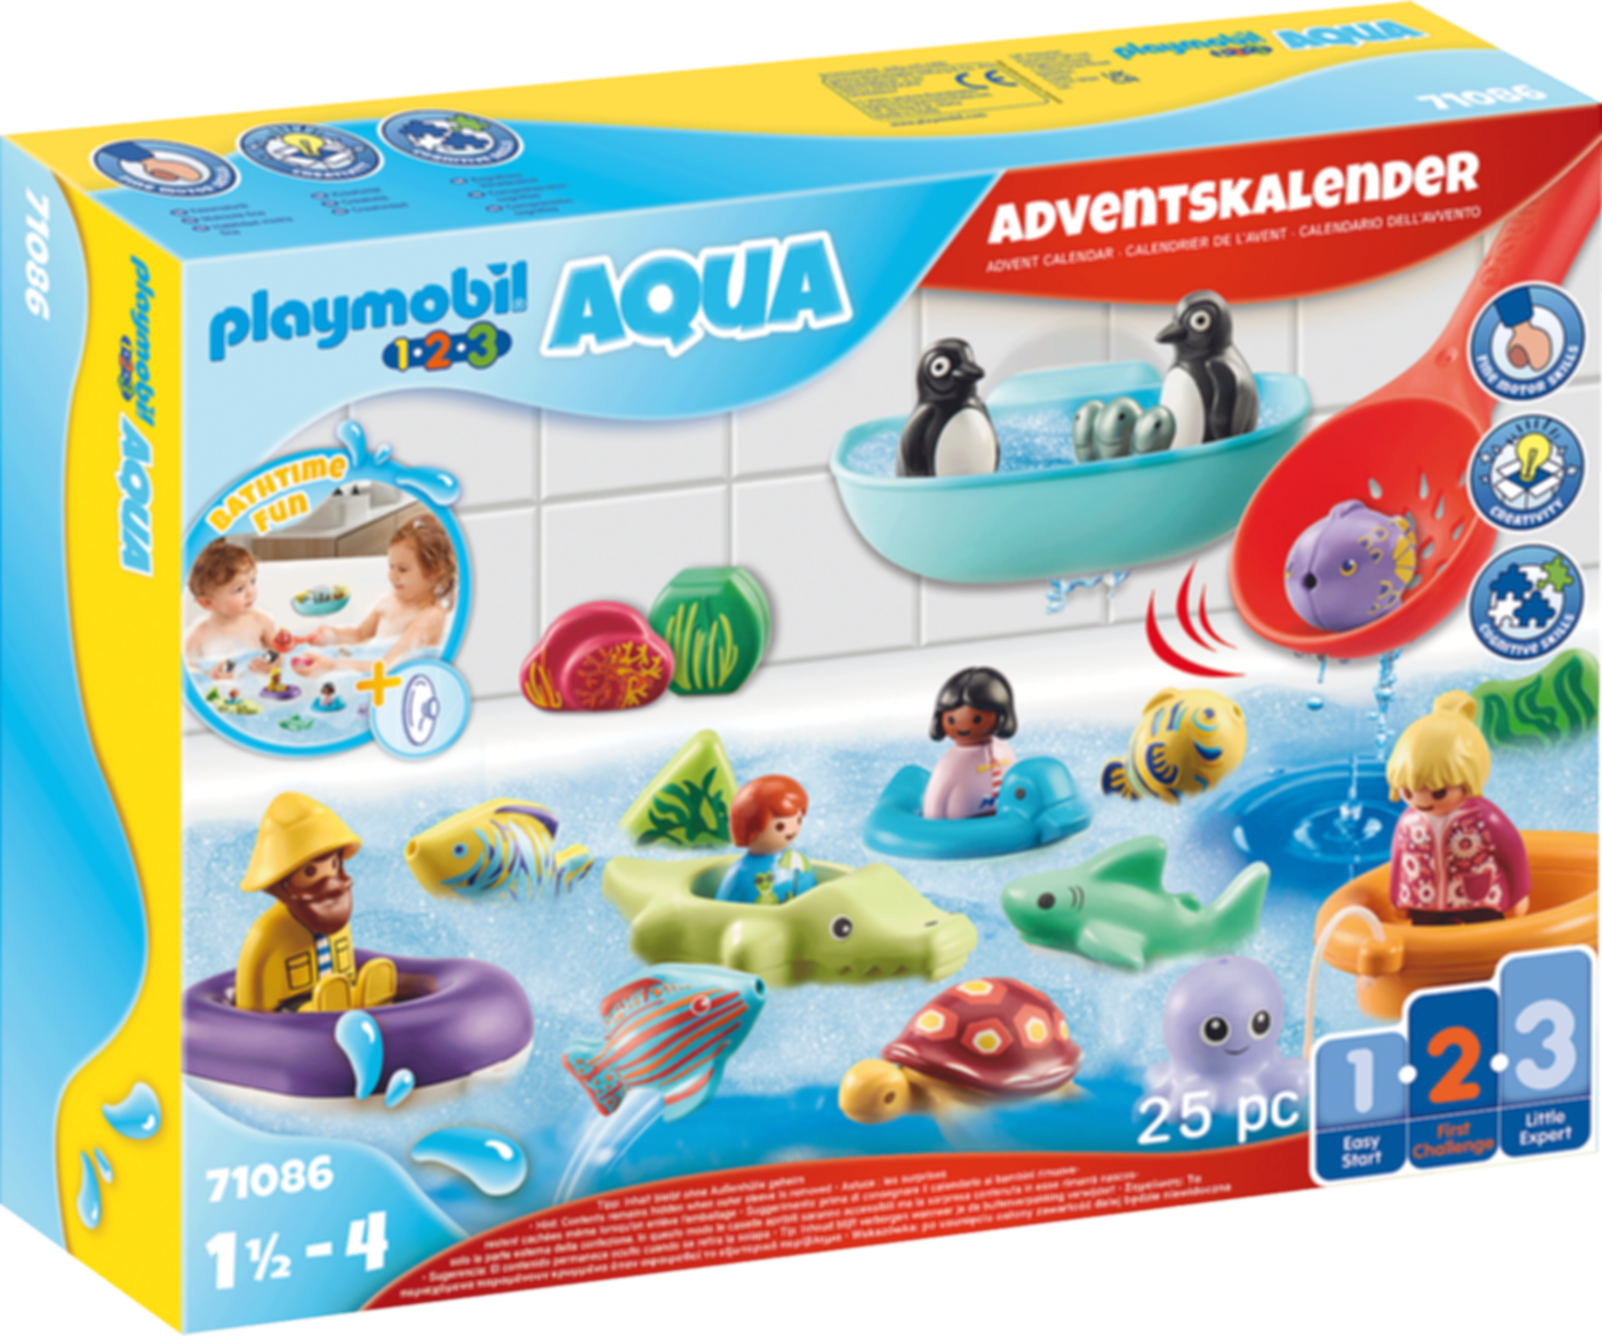 Playmobil® 1.2.3 Advent Calendar - athtime Fun gameplay